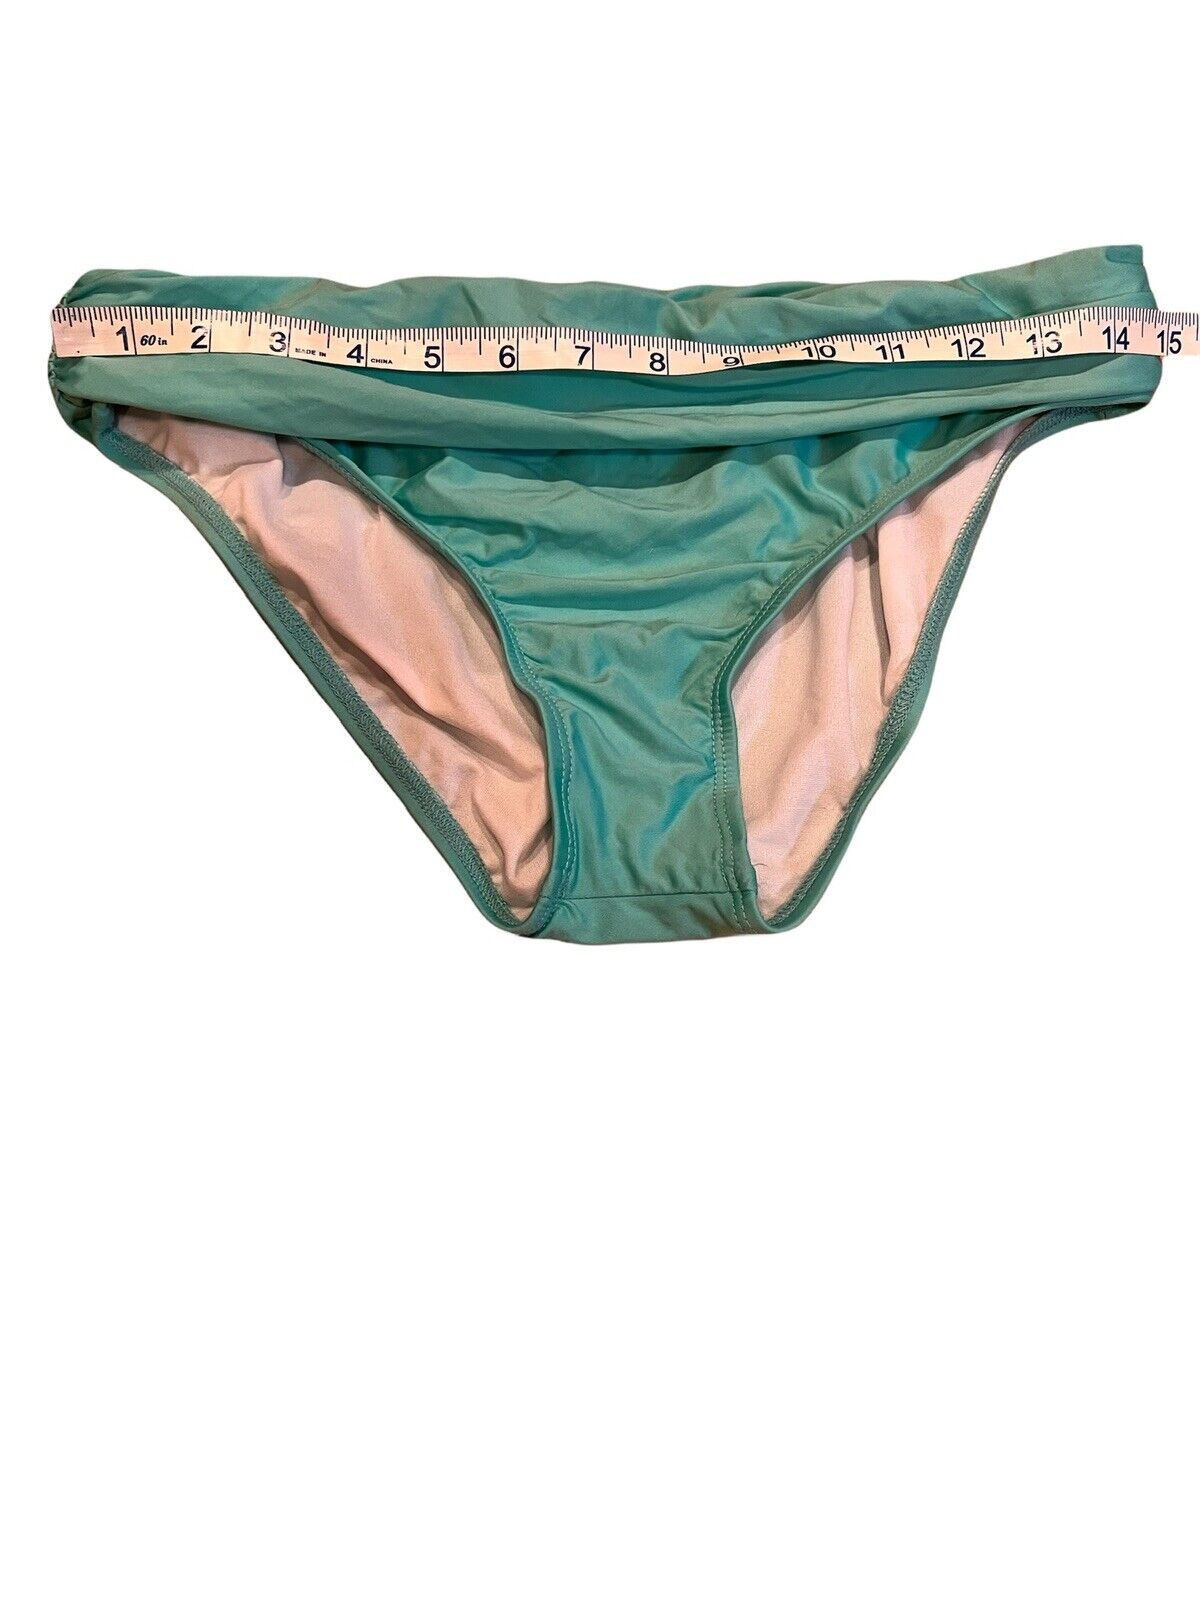 Athena Turquoise Bandana Shaped Bikini - image 10